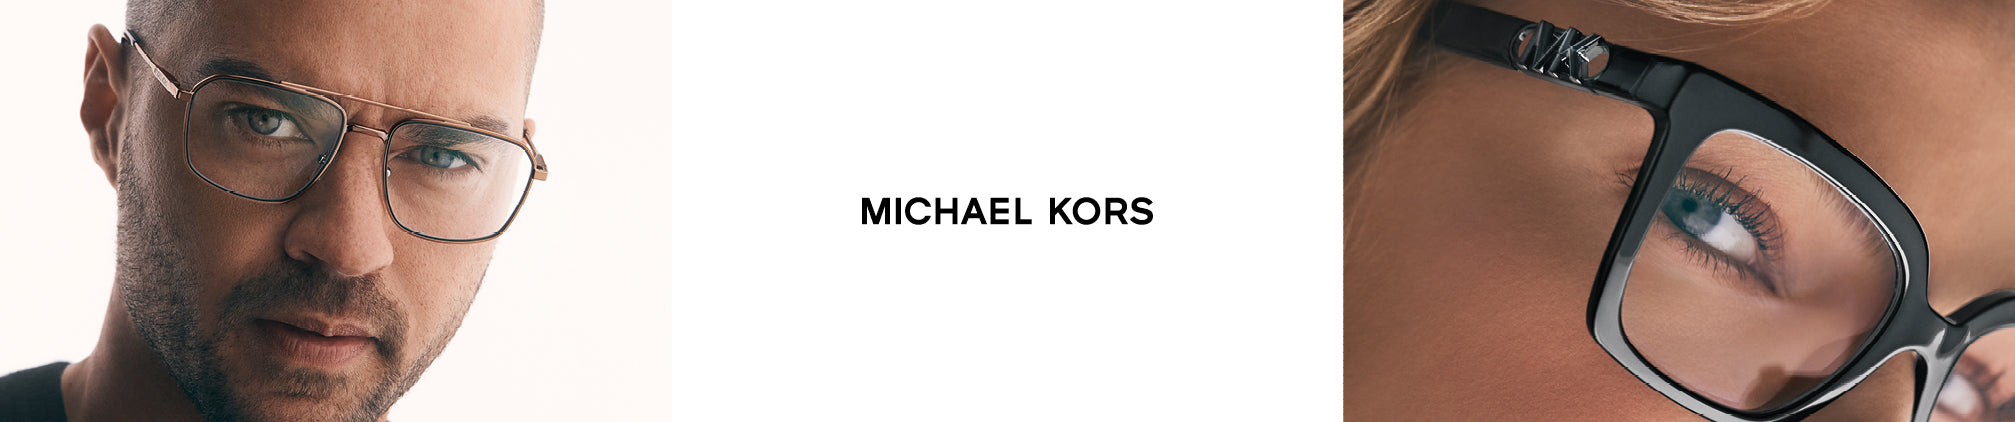 Michael Kors – Fashion Eyewear